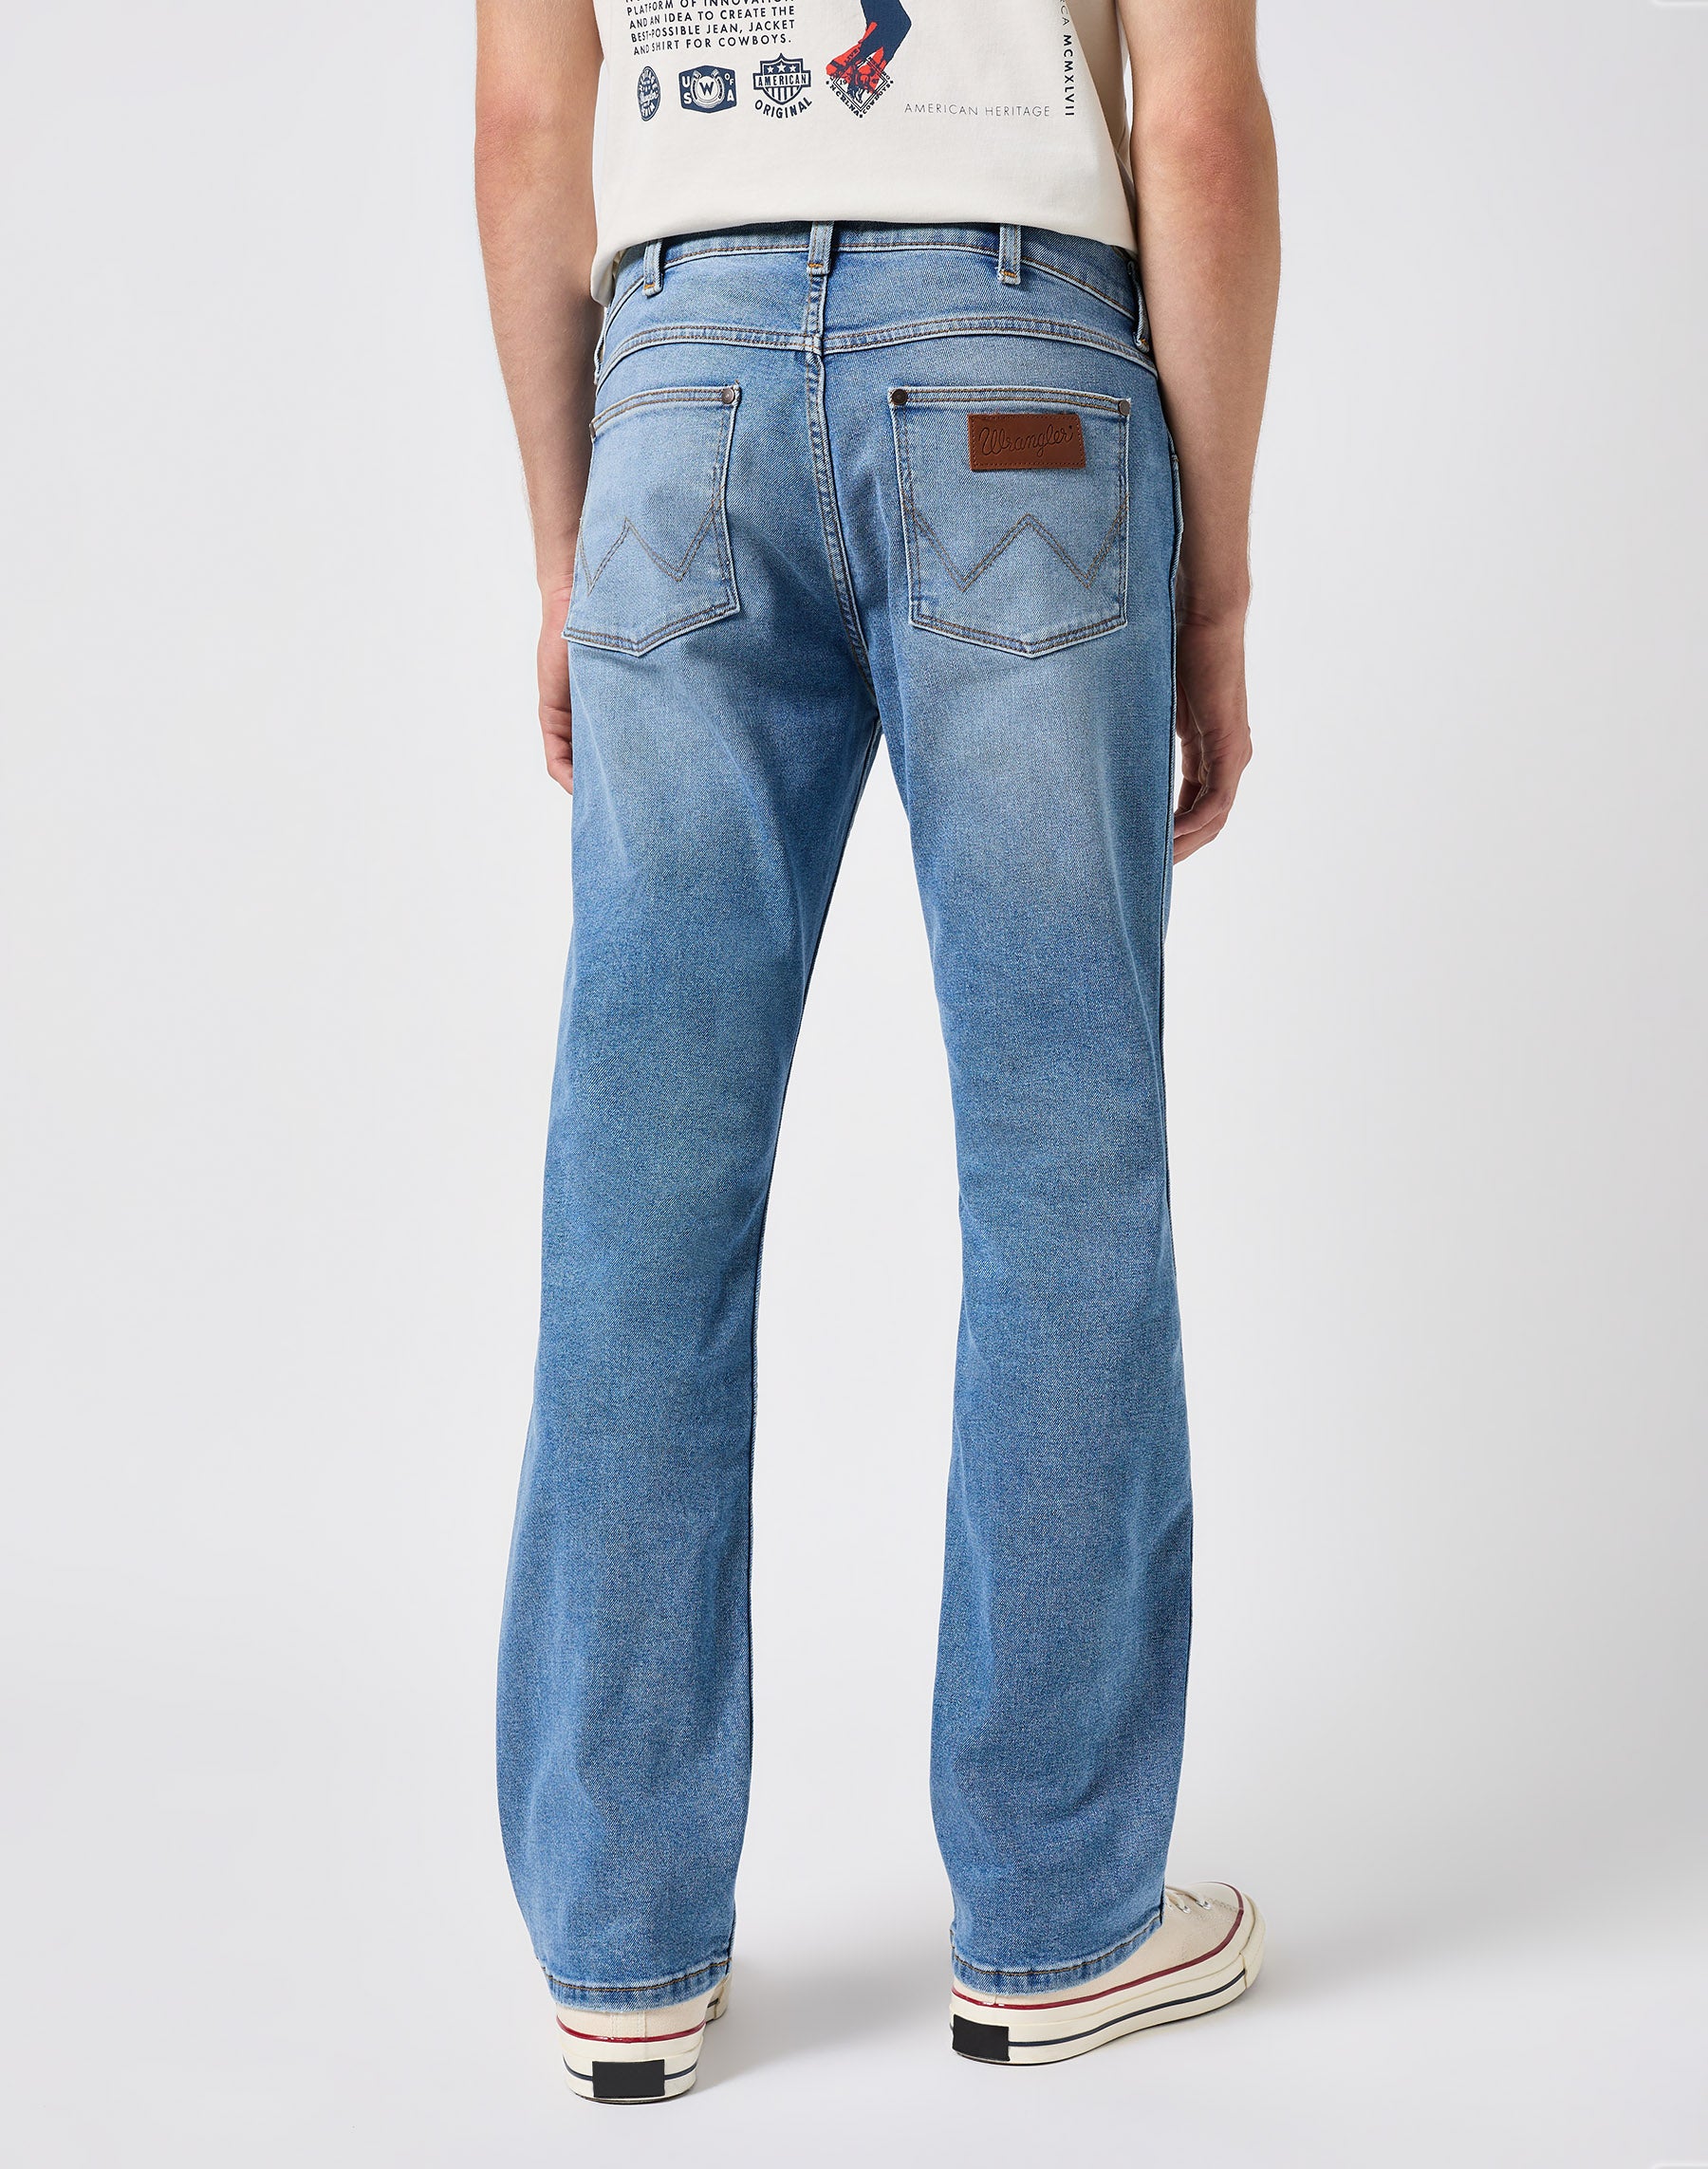 Horizon in Blue Springs Jeans Wrangler   